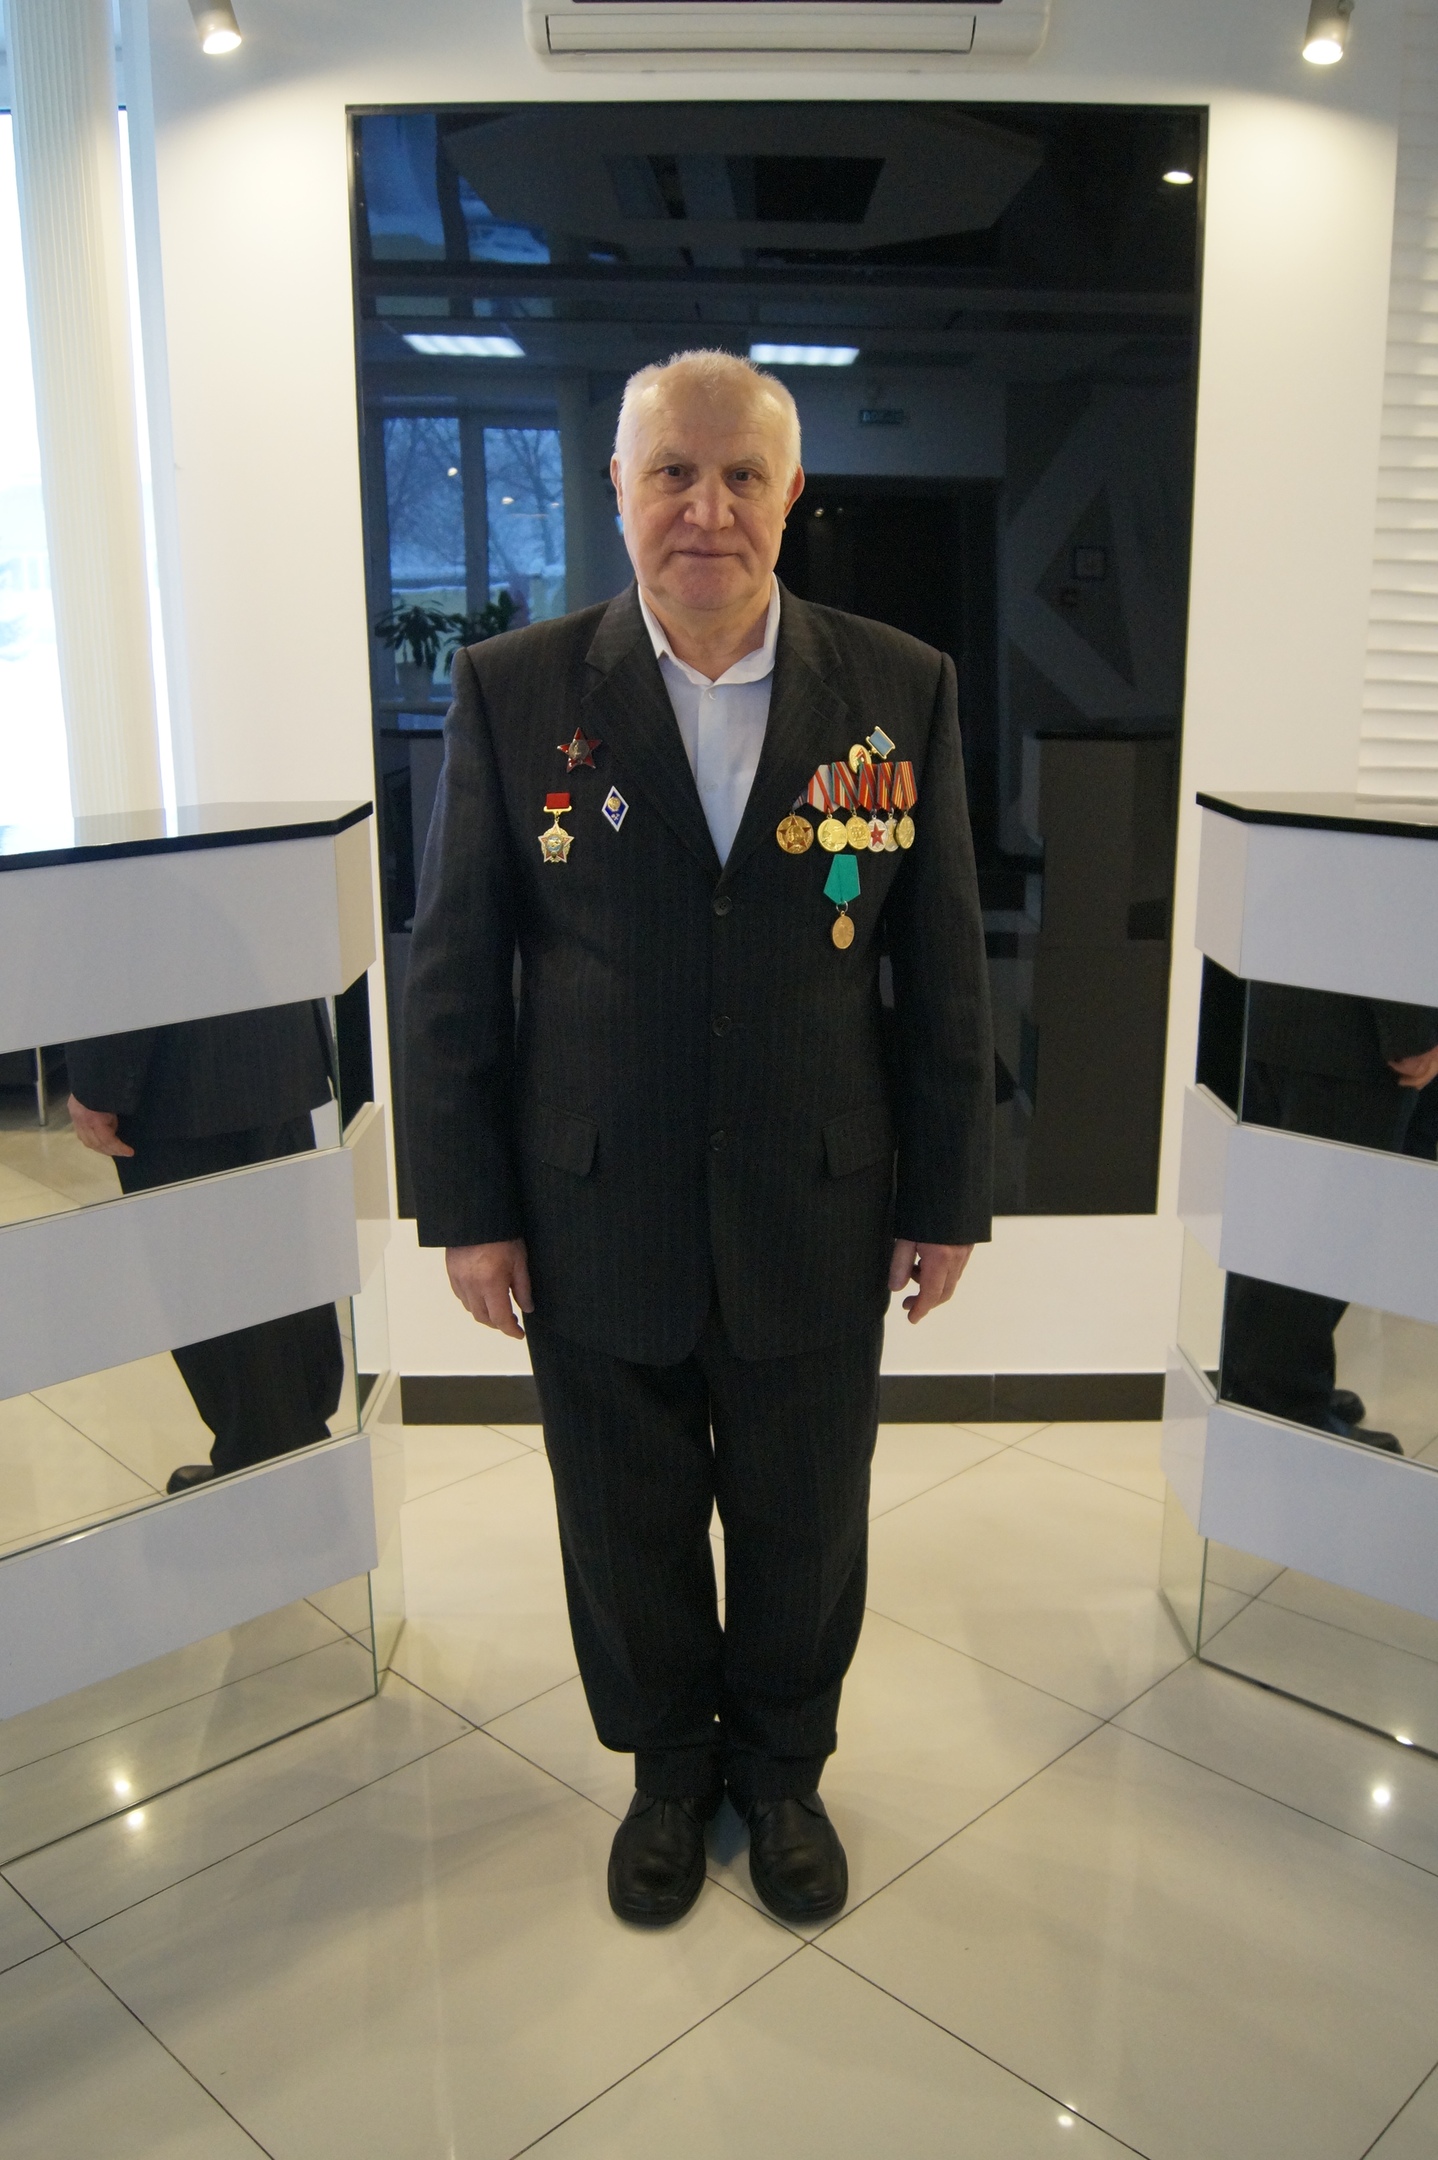 Специалисту по контрольно-пропускному режиму награжден медалью «30 лет вывода советских войск из Афганистана»